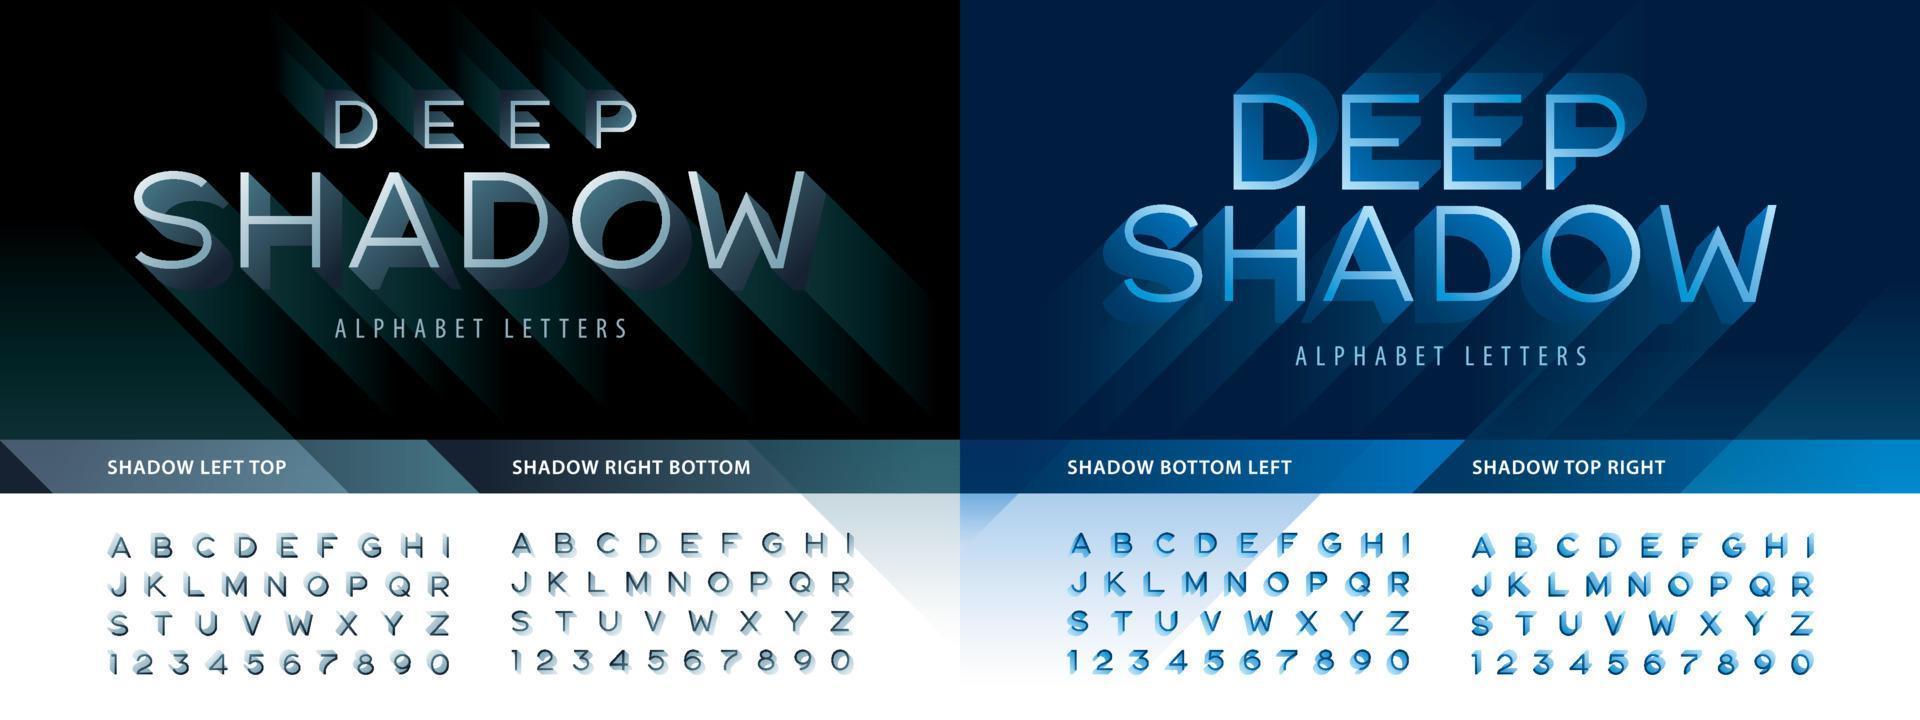 lettere e numeri dell'alfabeto ombra profonda astratta, carattere in stile linea moderna con ombra vettore